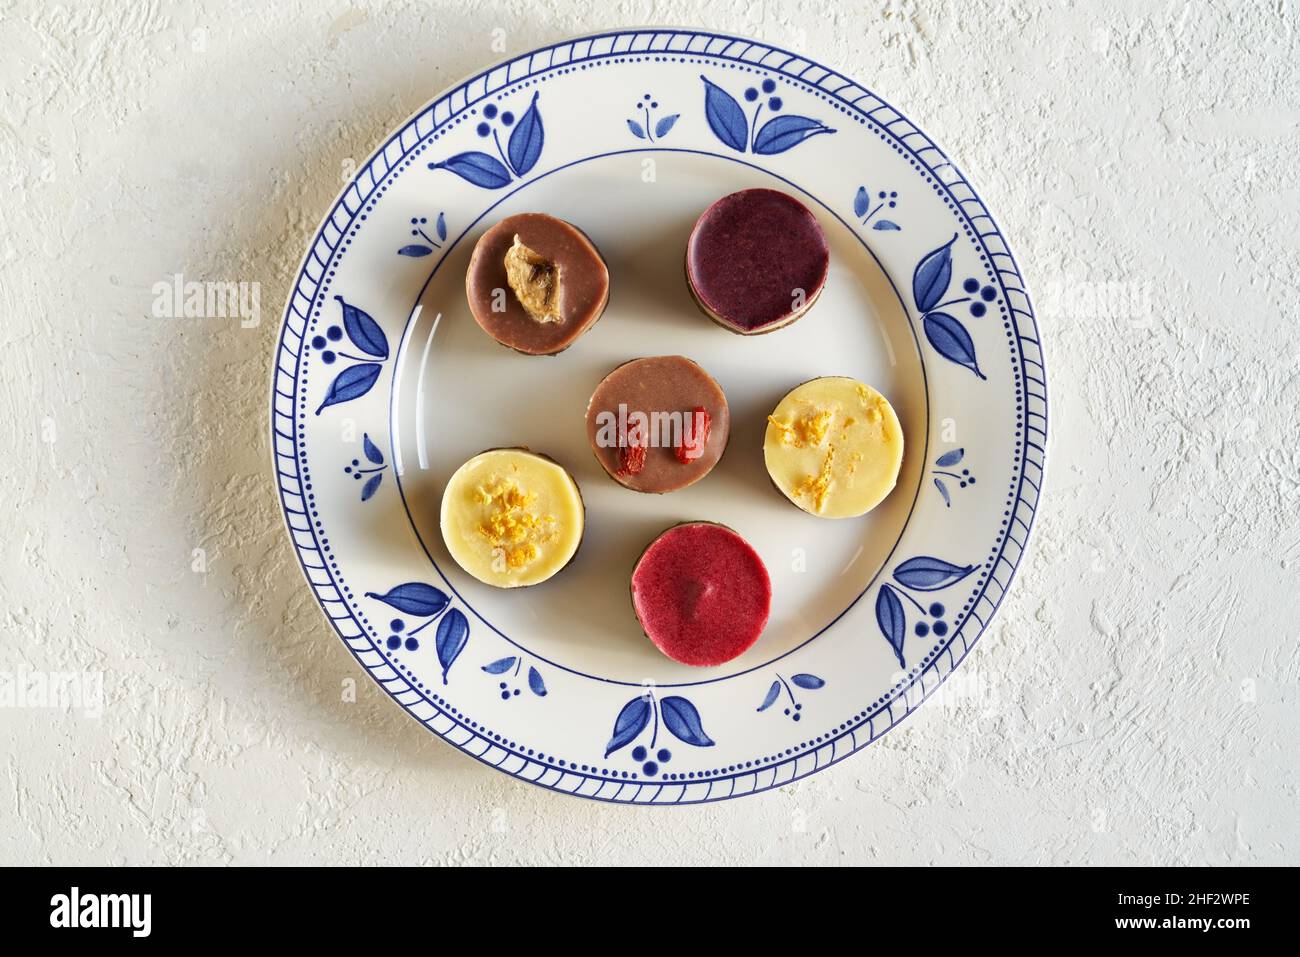 Vegane Mini-Desserts mit Heidelbeere, Goji, Himbeere, Zitrone und Banane auf einem dekorierten Teller auf weißem Hintergrund, Draufsicht Stockfoto